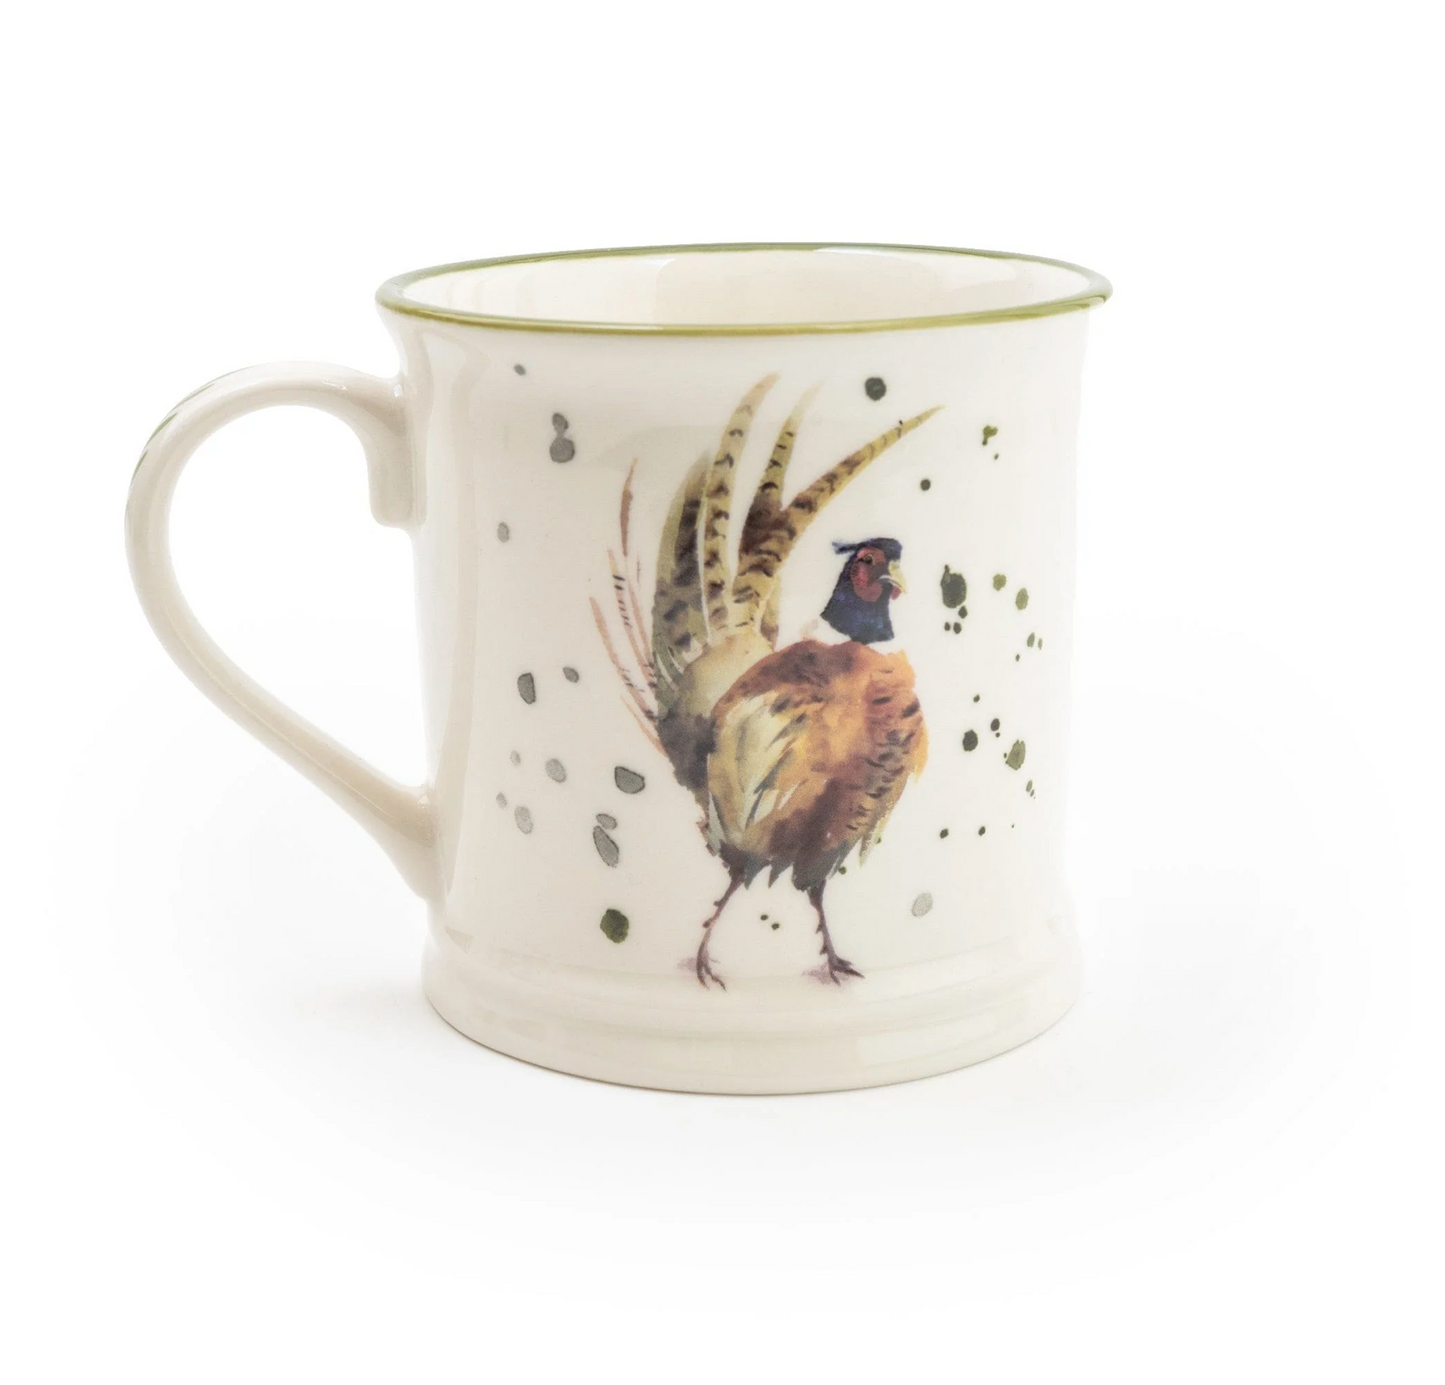 Rustic Country Tankard Mug, Pheasant